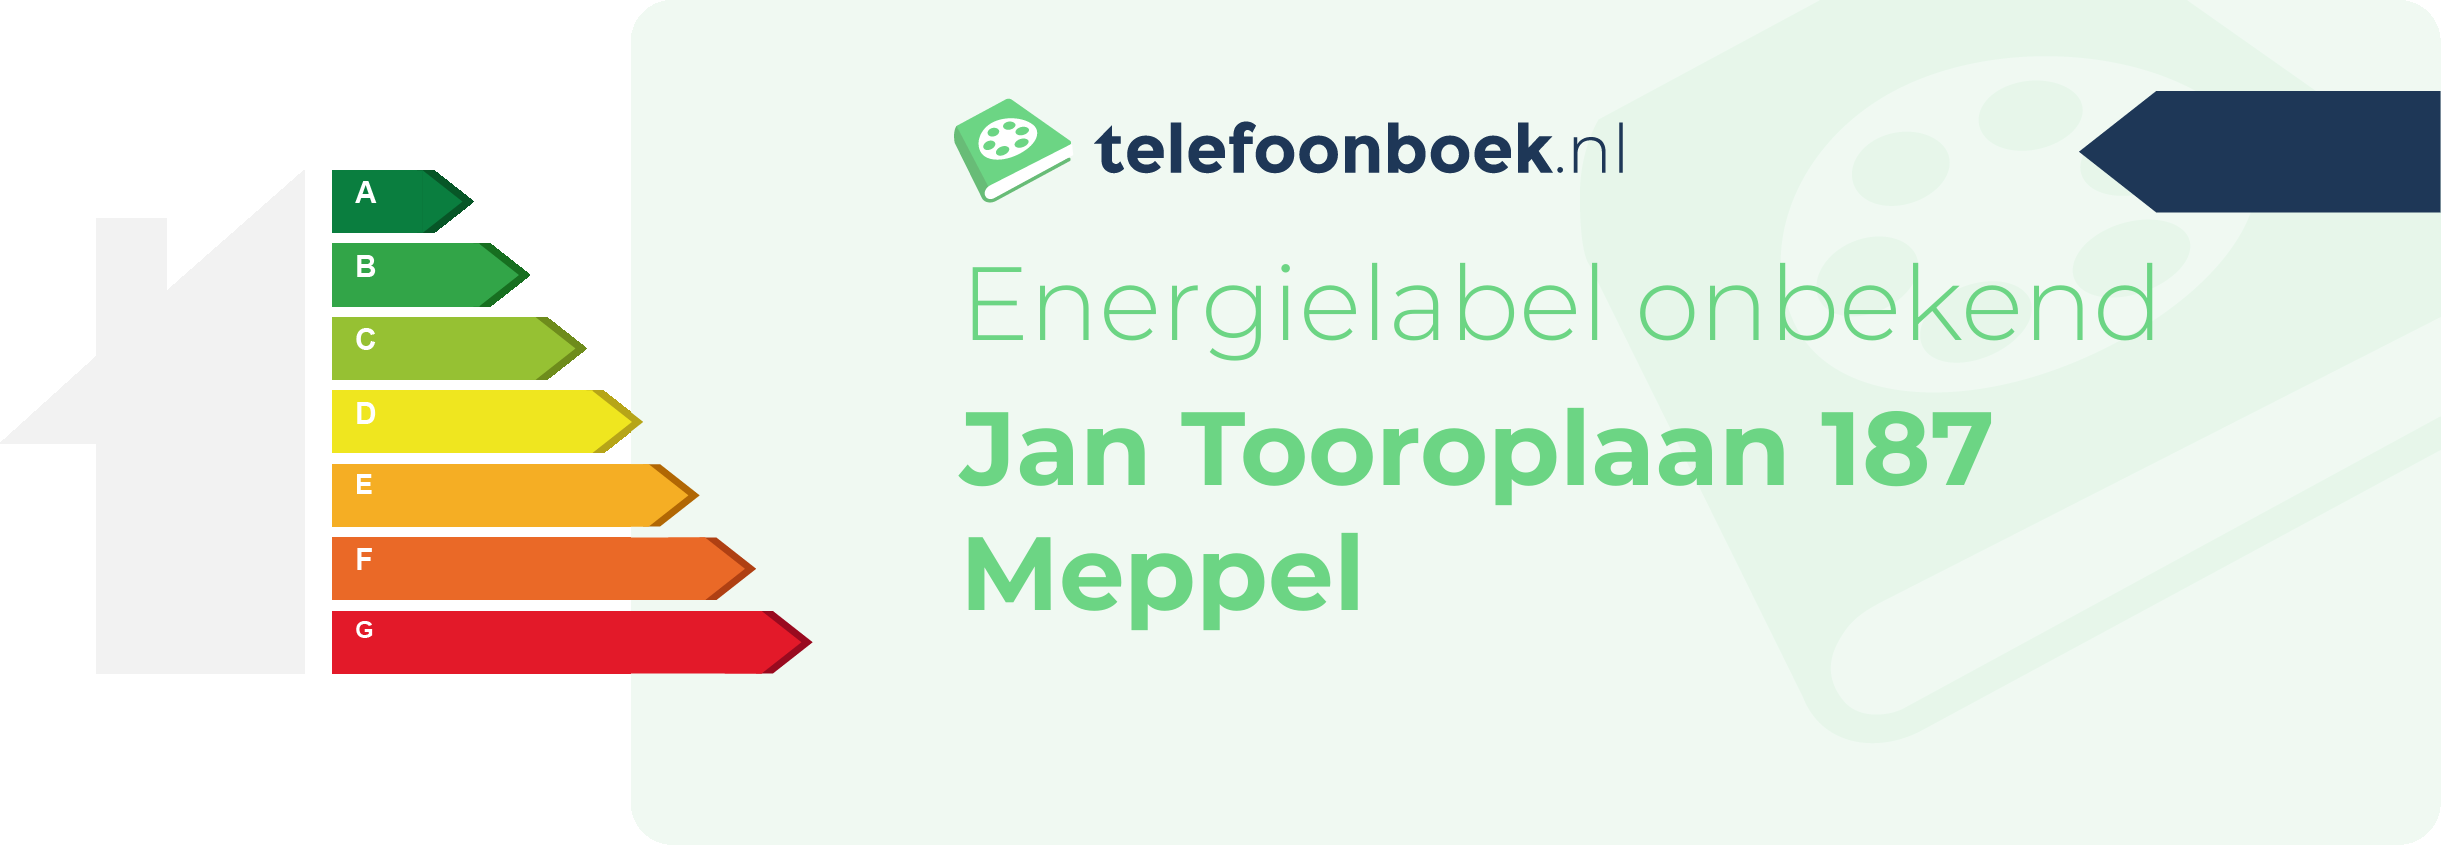 Energielabel Jan Tooroplaan 187 Meppel